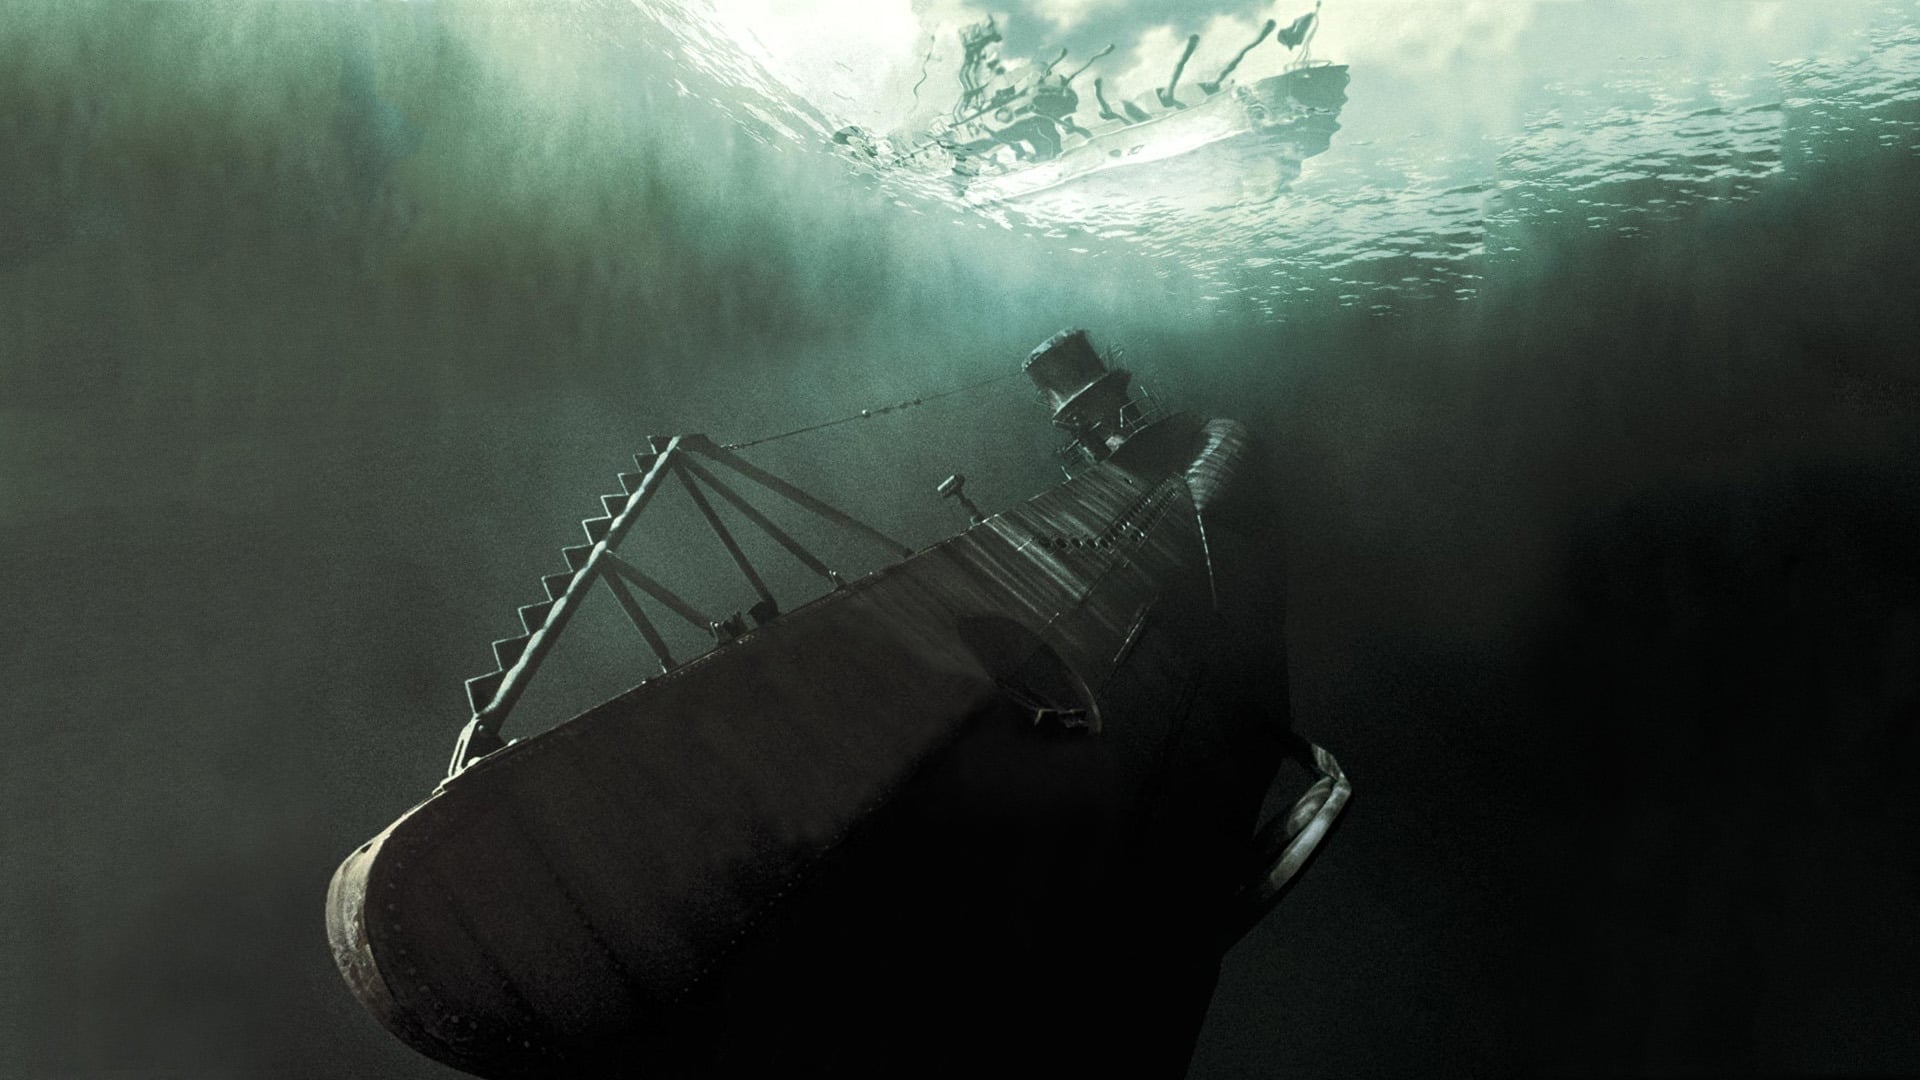 دانلود فیلم U-571 2000